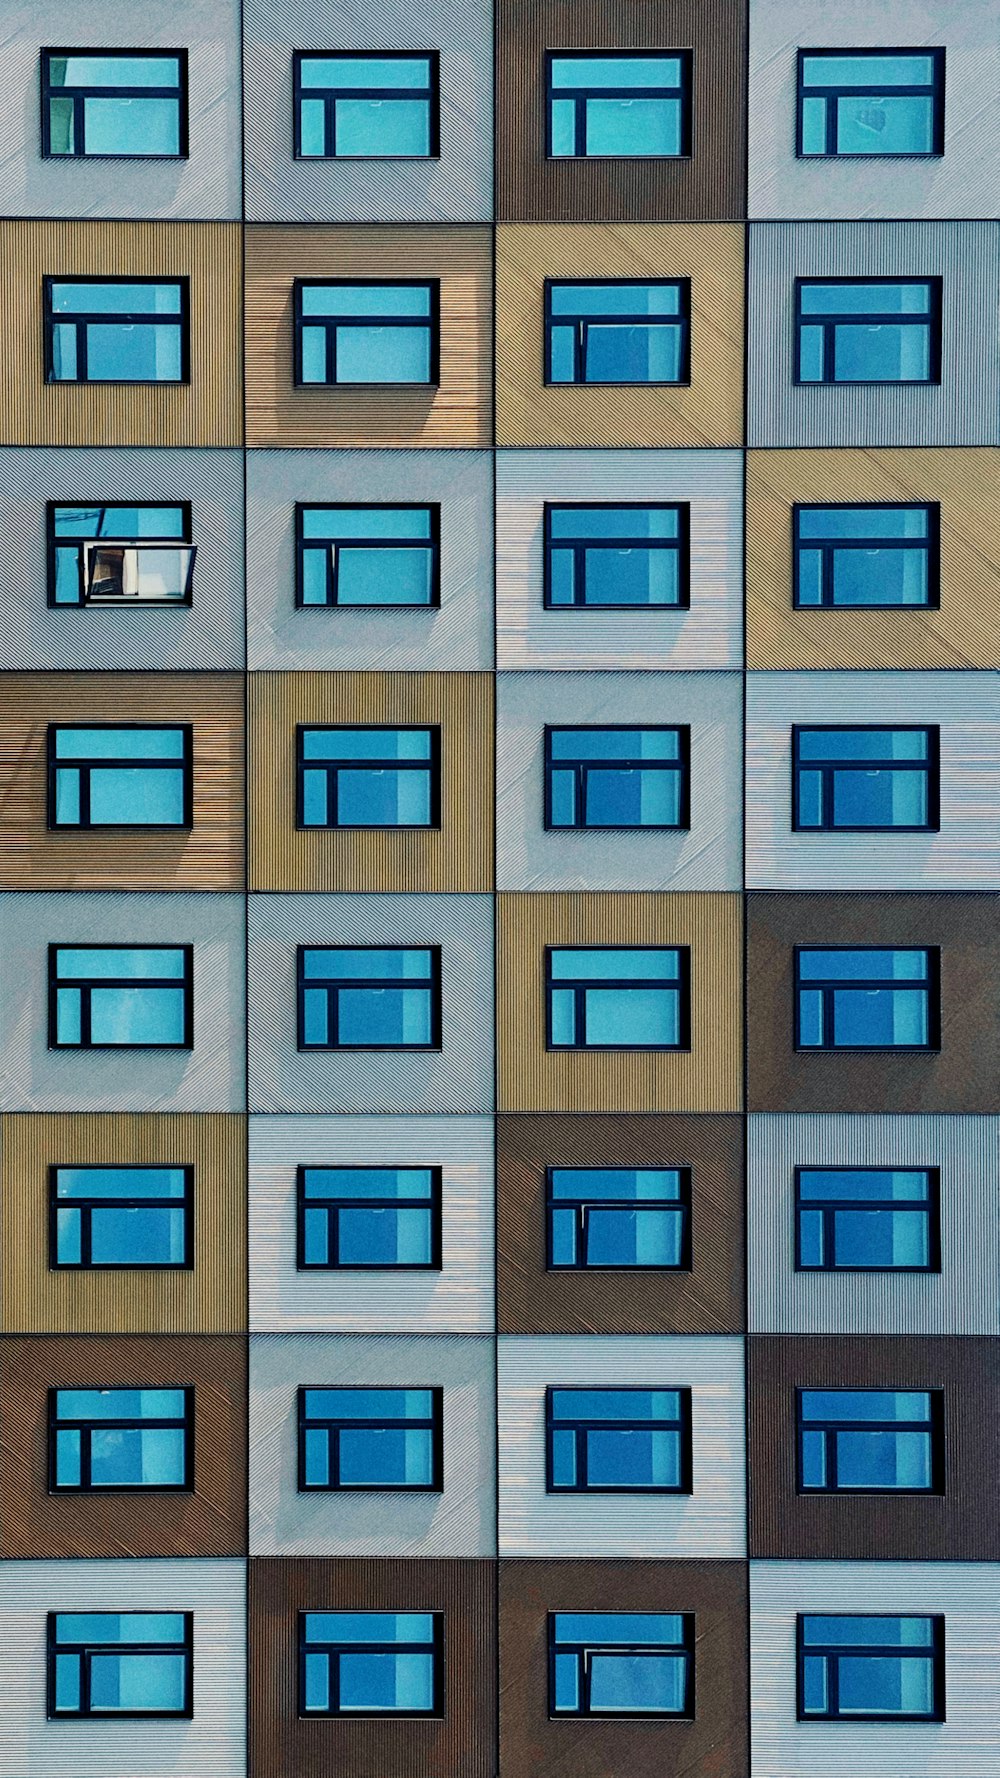 Ein mehrfarbiges Bild eines Gebäudes mit vielen Fenstern